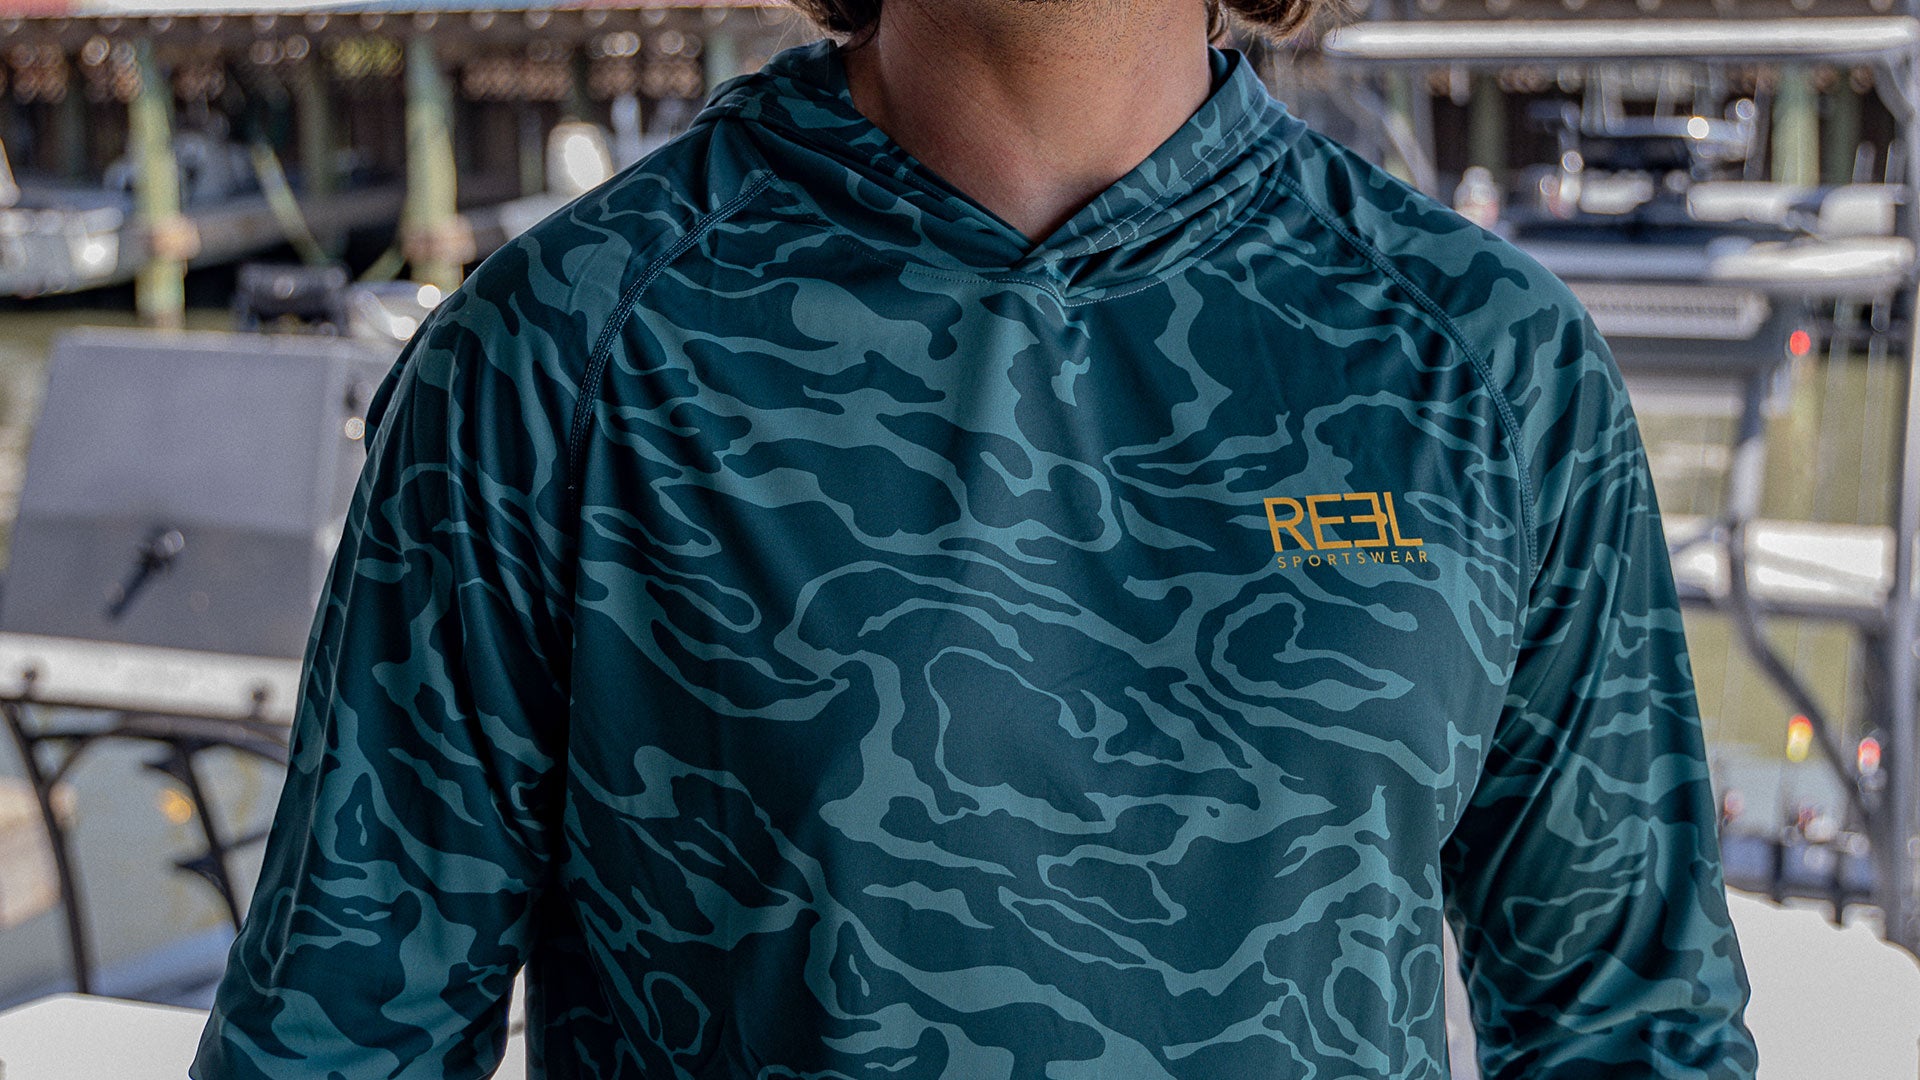 BEST SELLING FISHING STYLES - Reel Sportswear